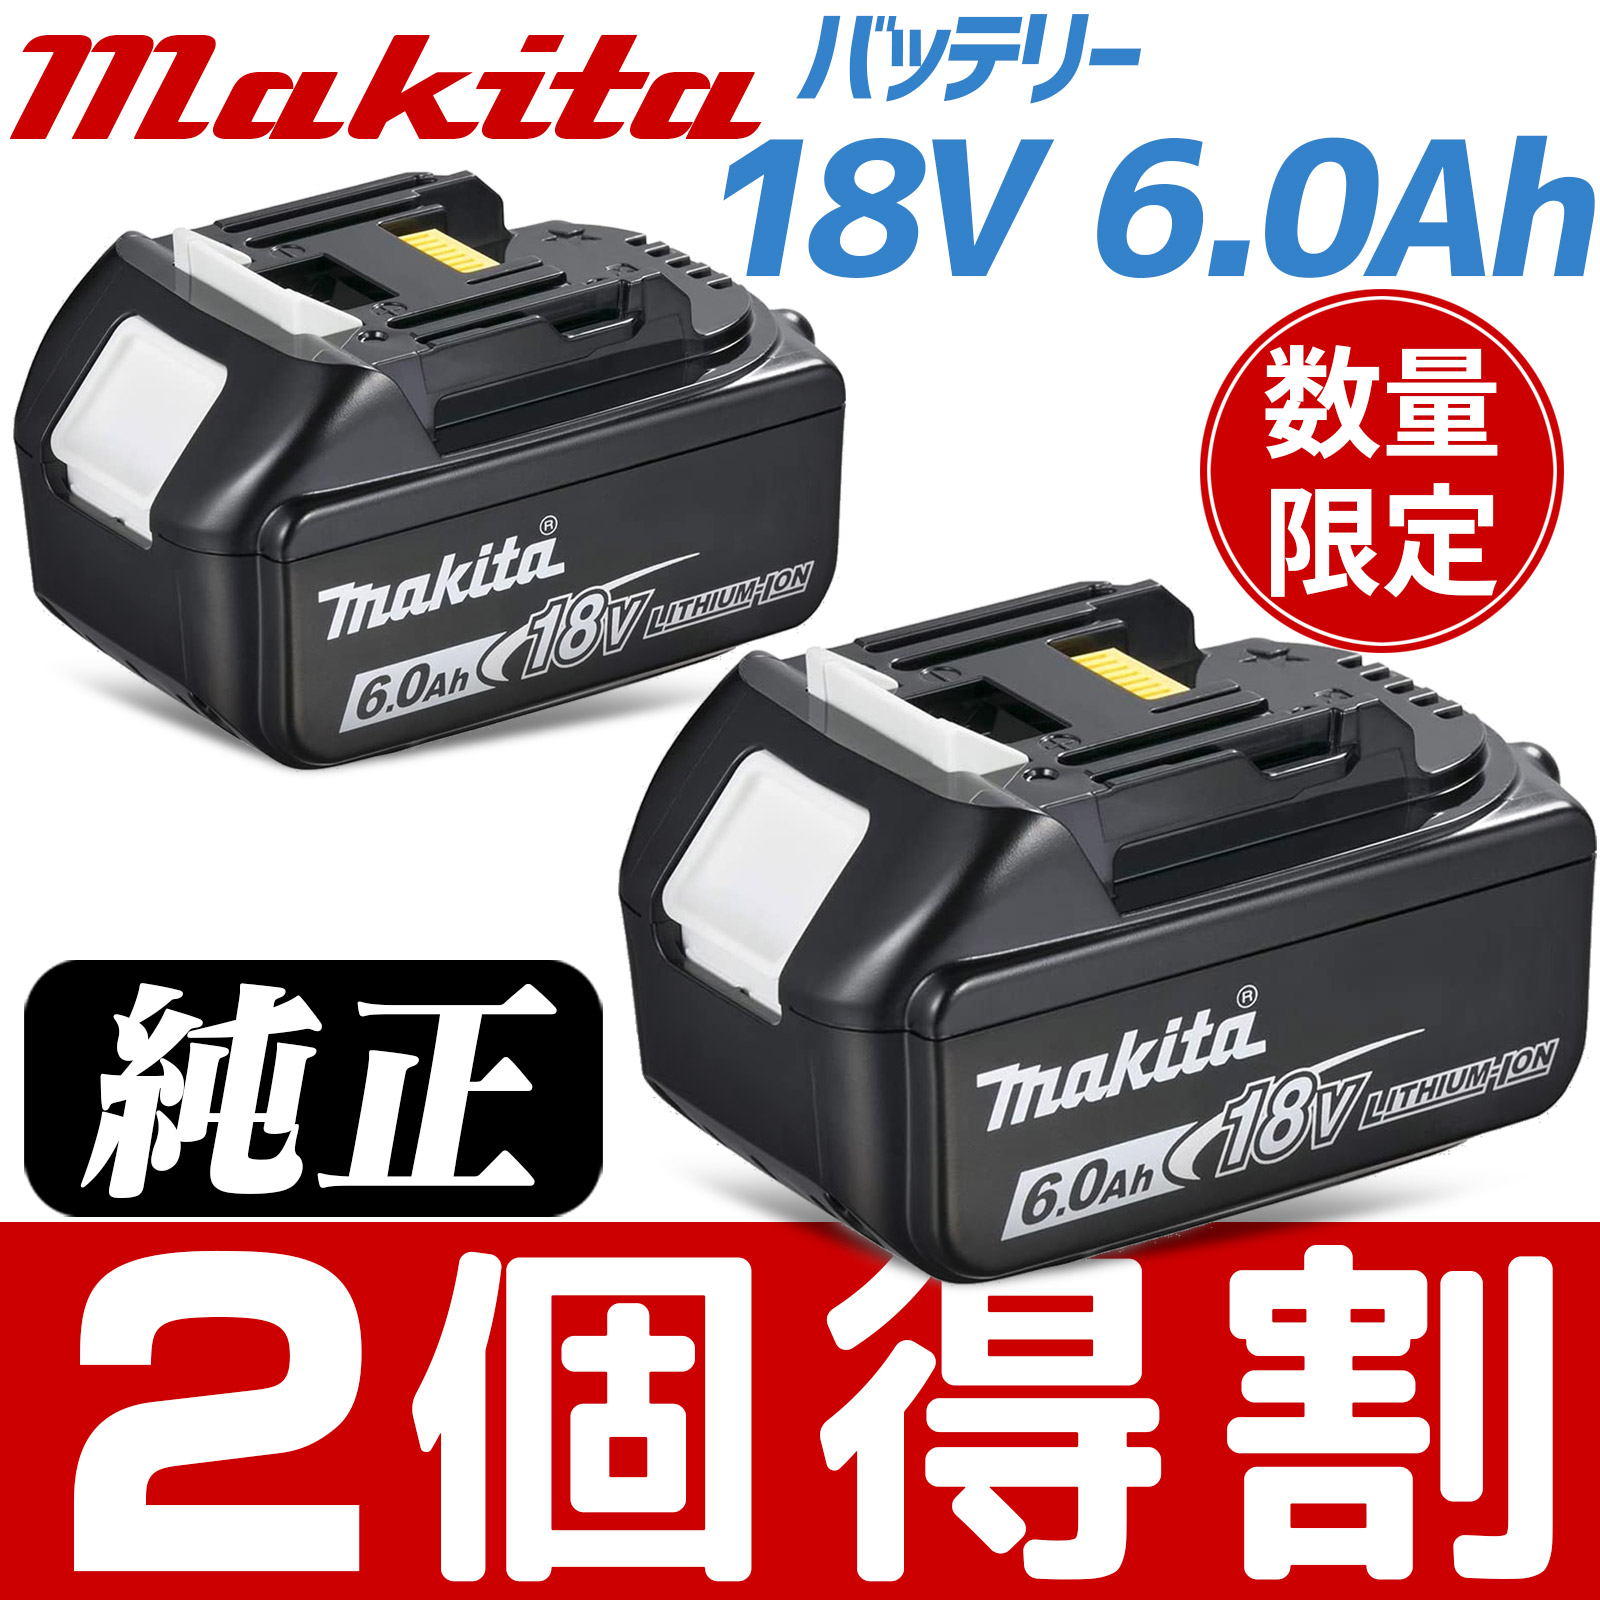 マキタ 電動工具 18vバッテリー 6.0Ah お買い得 2個セット １年保証 A-60464 新品 注目の福袋！ td172dz BL1860B makita 定休日以外毎日出荷中 箱なし品